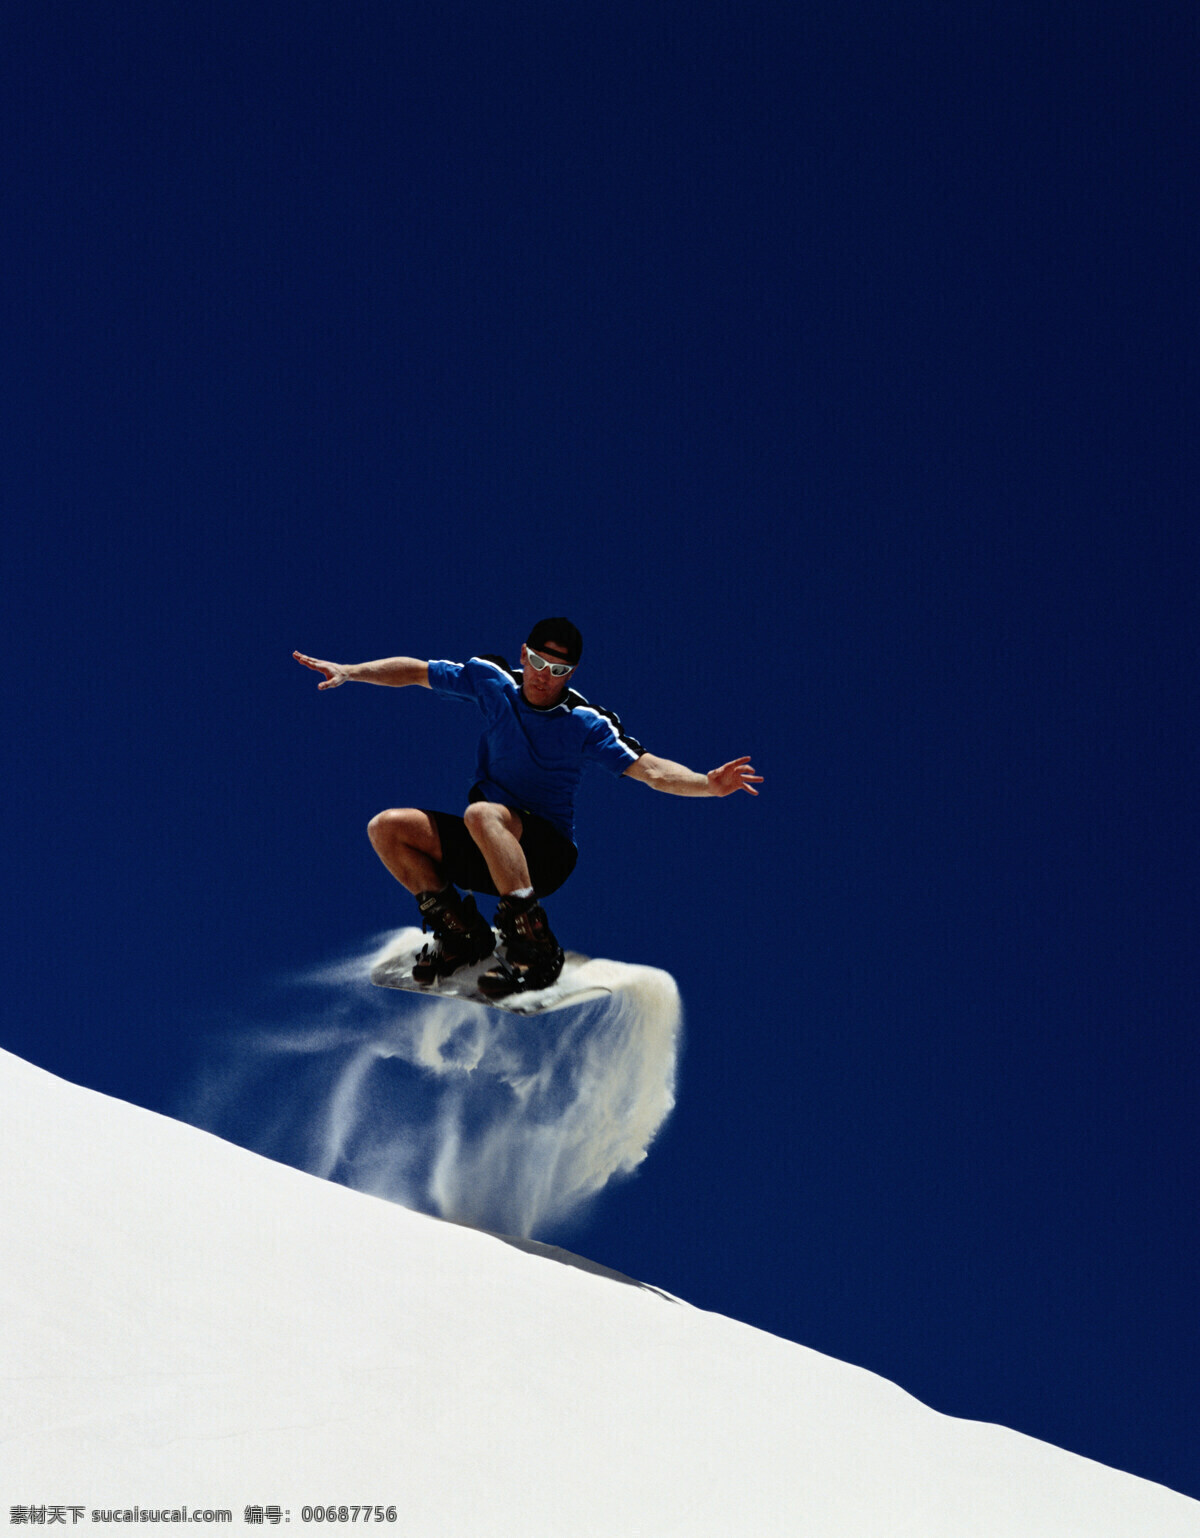 滑雪 人物 滑雪运动 体育运动 户外运动 旅游 户外旅游 人物素材 人物摄影 滑雪图片 生活百科